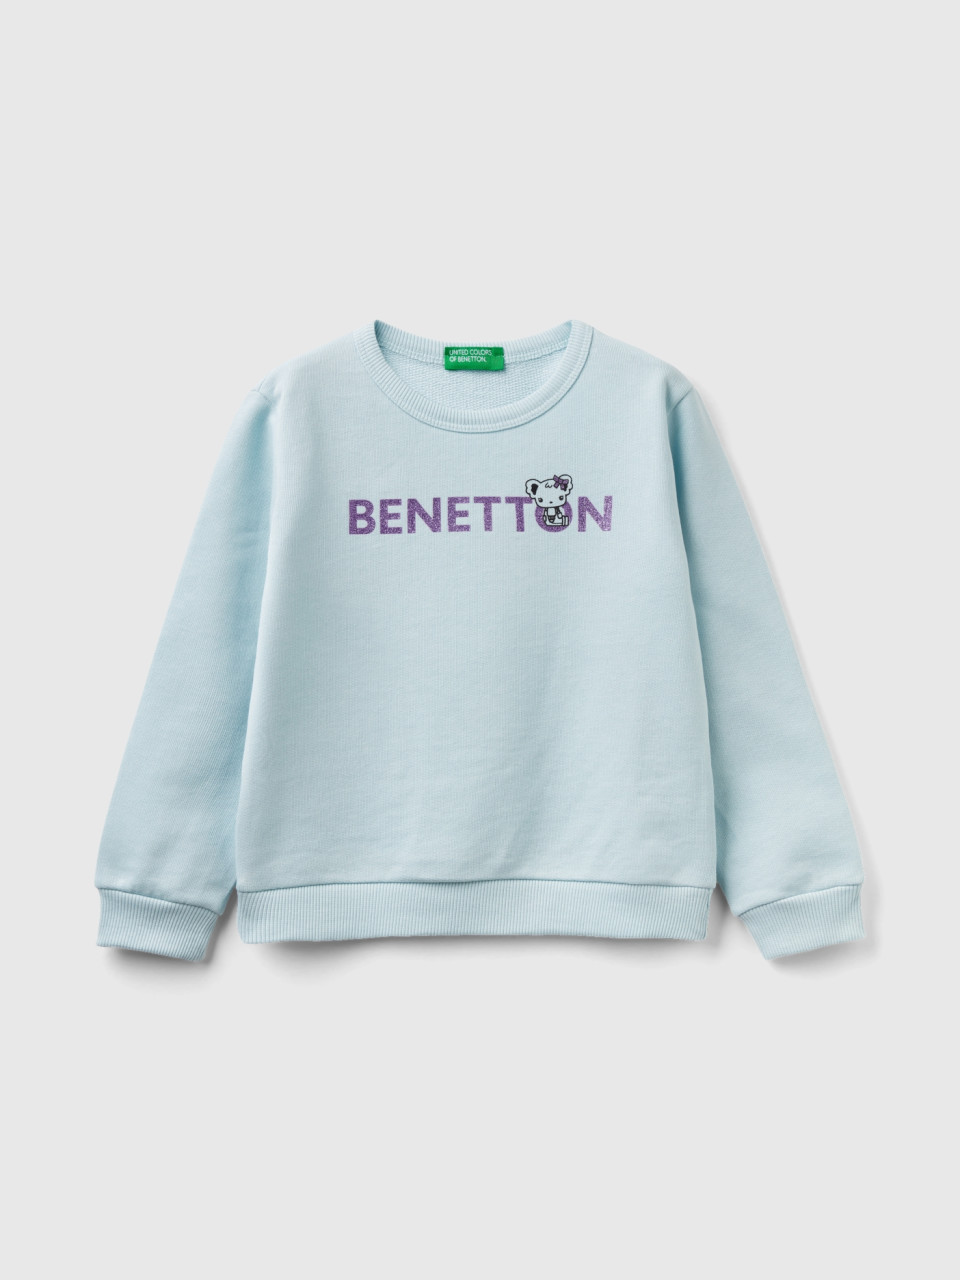 Benetton, Sweat 100% Algodão Orgânico Com Logótipo, Verde Água, Crianças